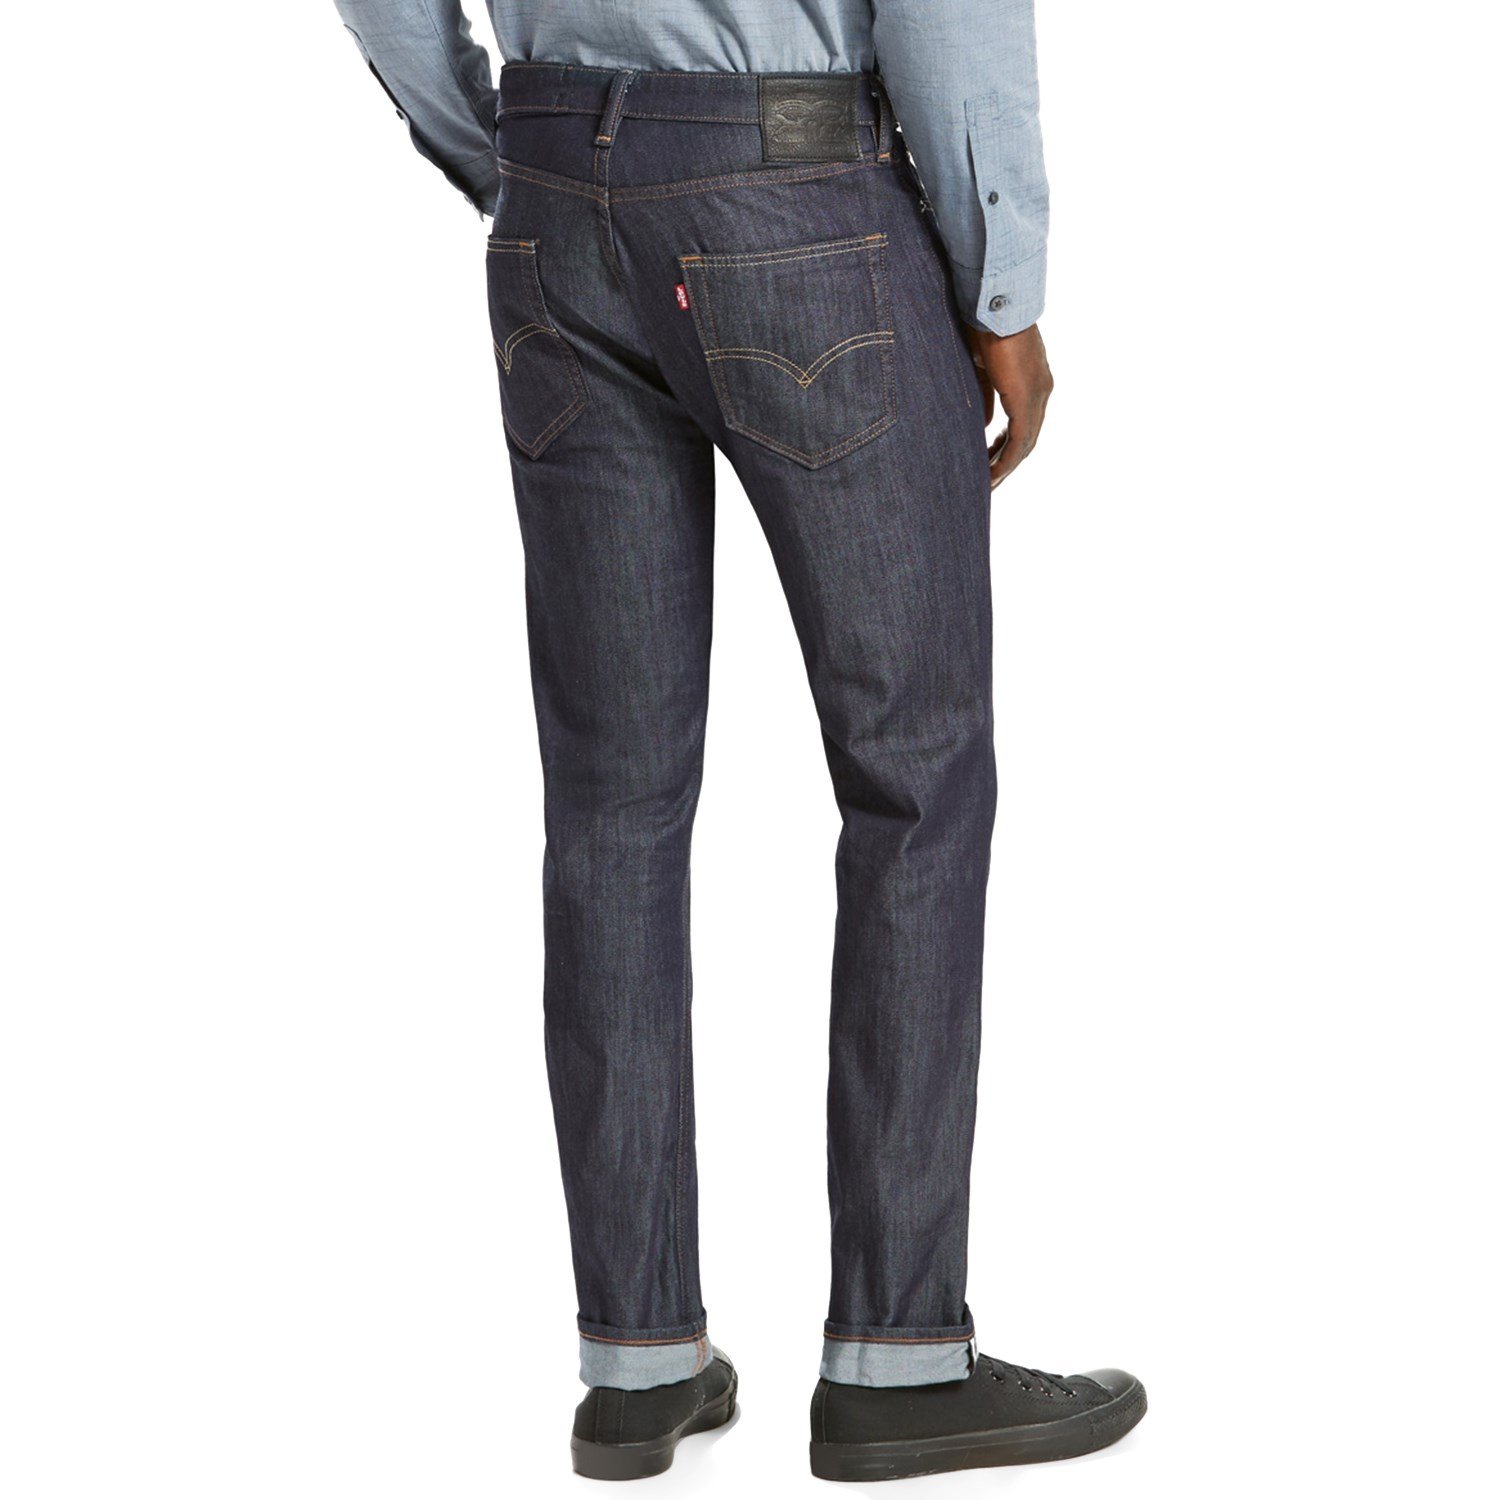 Top 70+ imagen levi's 511 commuter jeans review - Thptnganamst.edu.vn